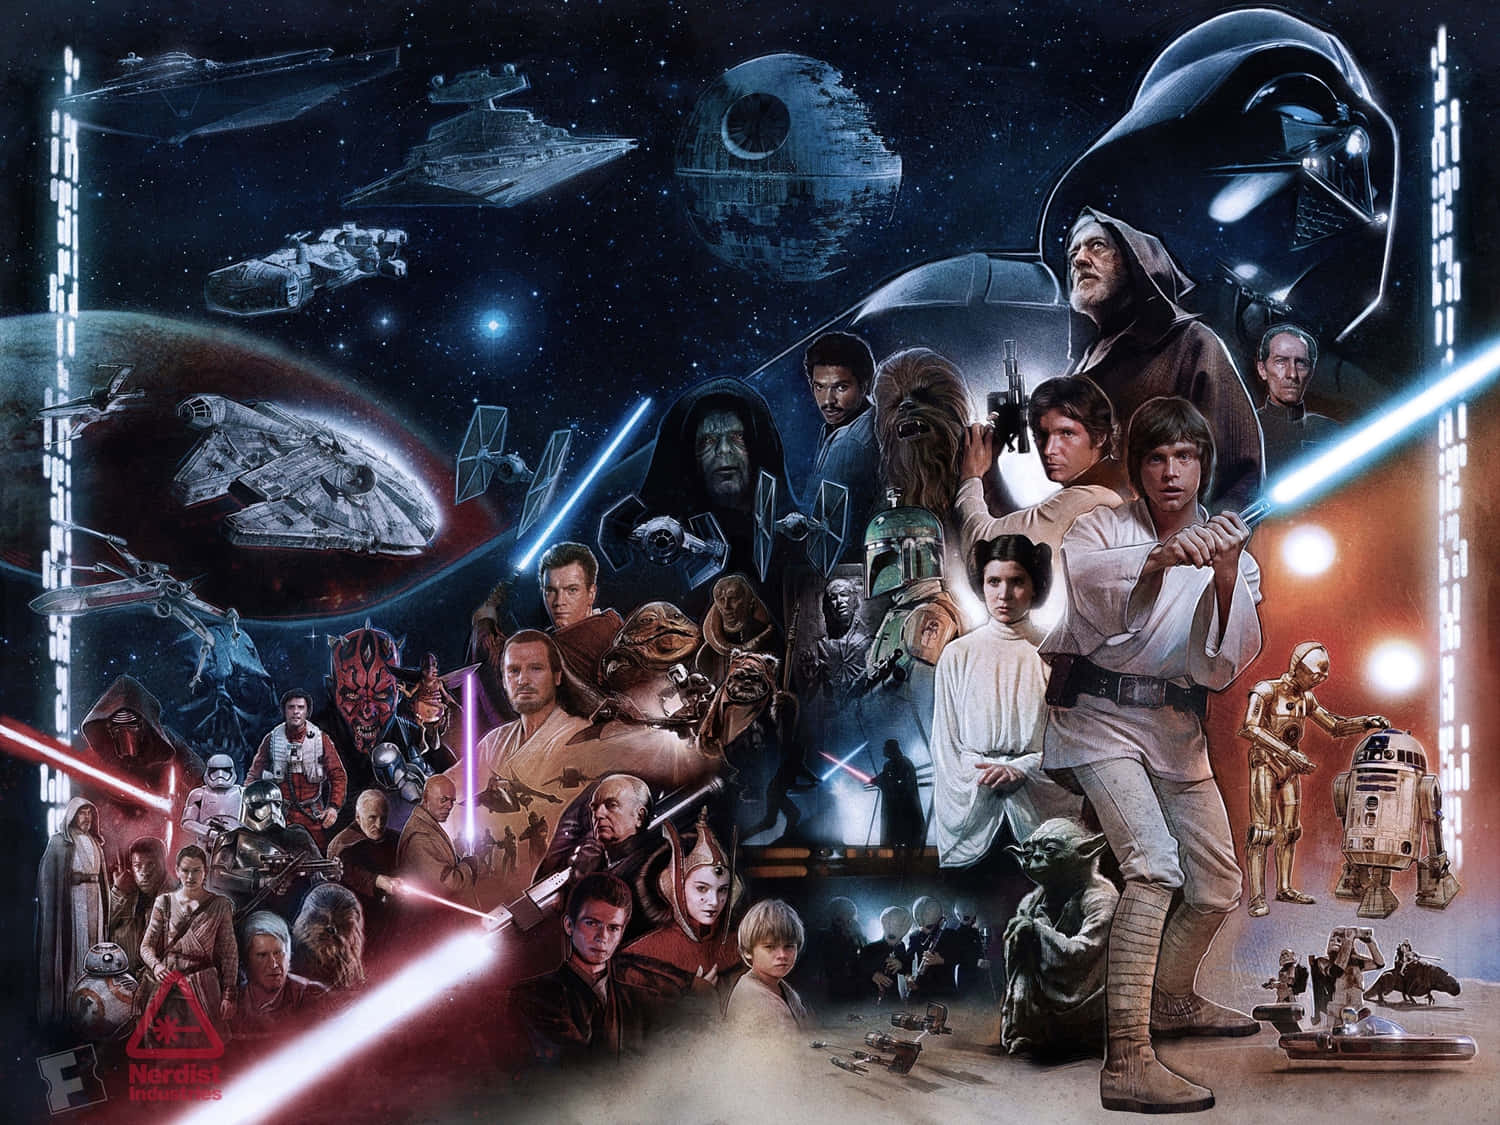 Mød de største karakterer af Star Wars universet. Wallpaper